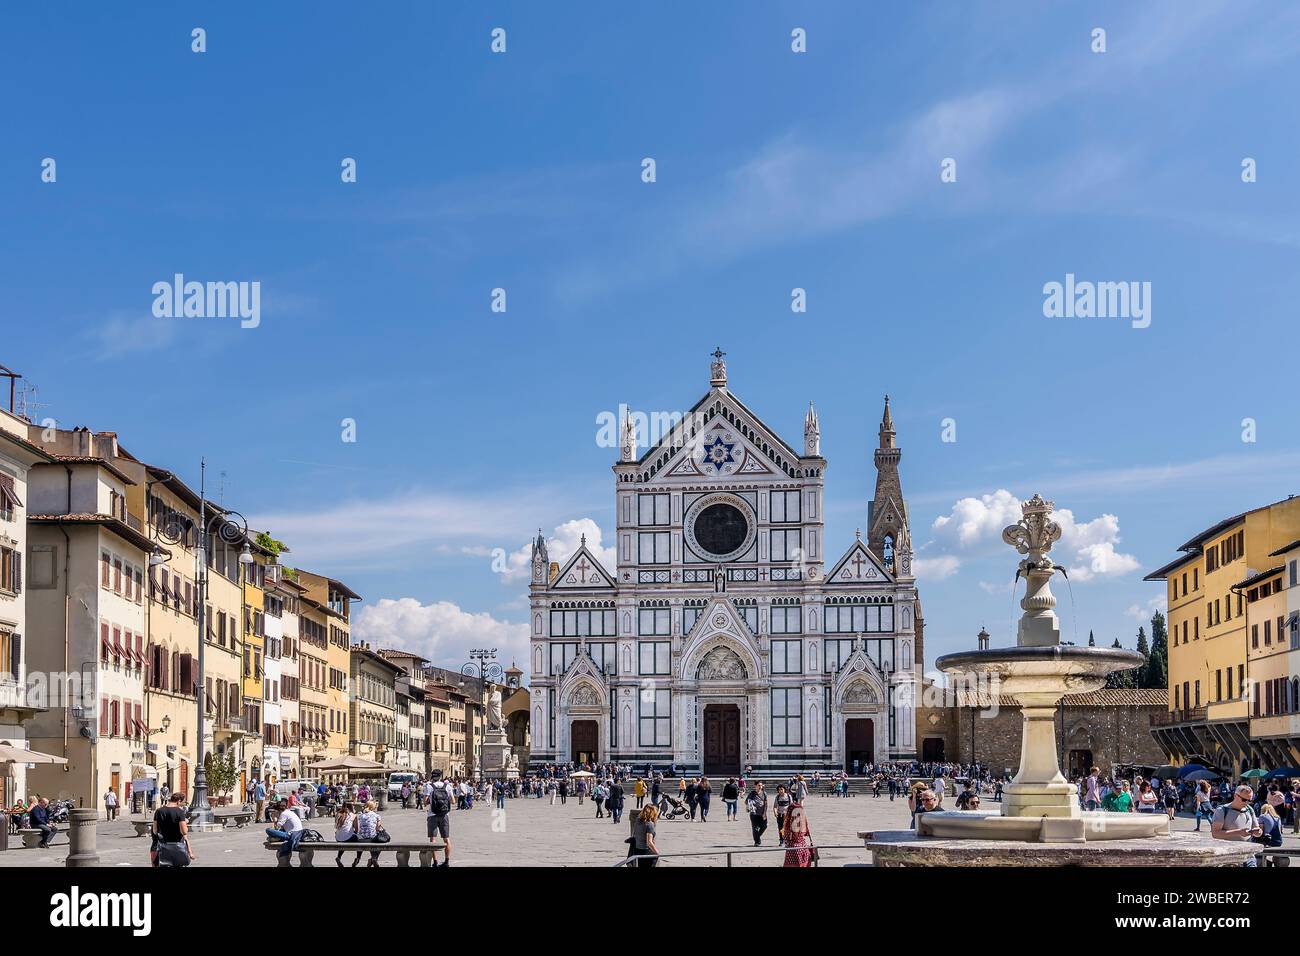 La célèbre Piazza Santa Croce dans le centre historique de Florence, en Italie Banque D'Images